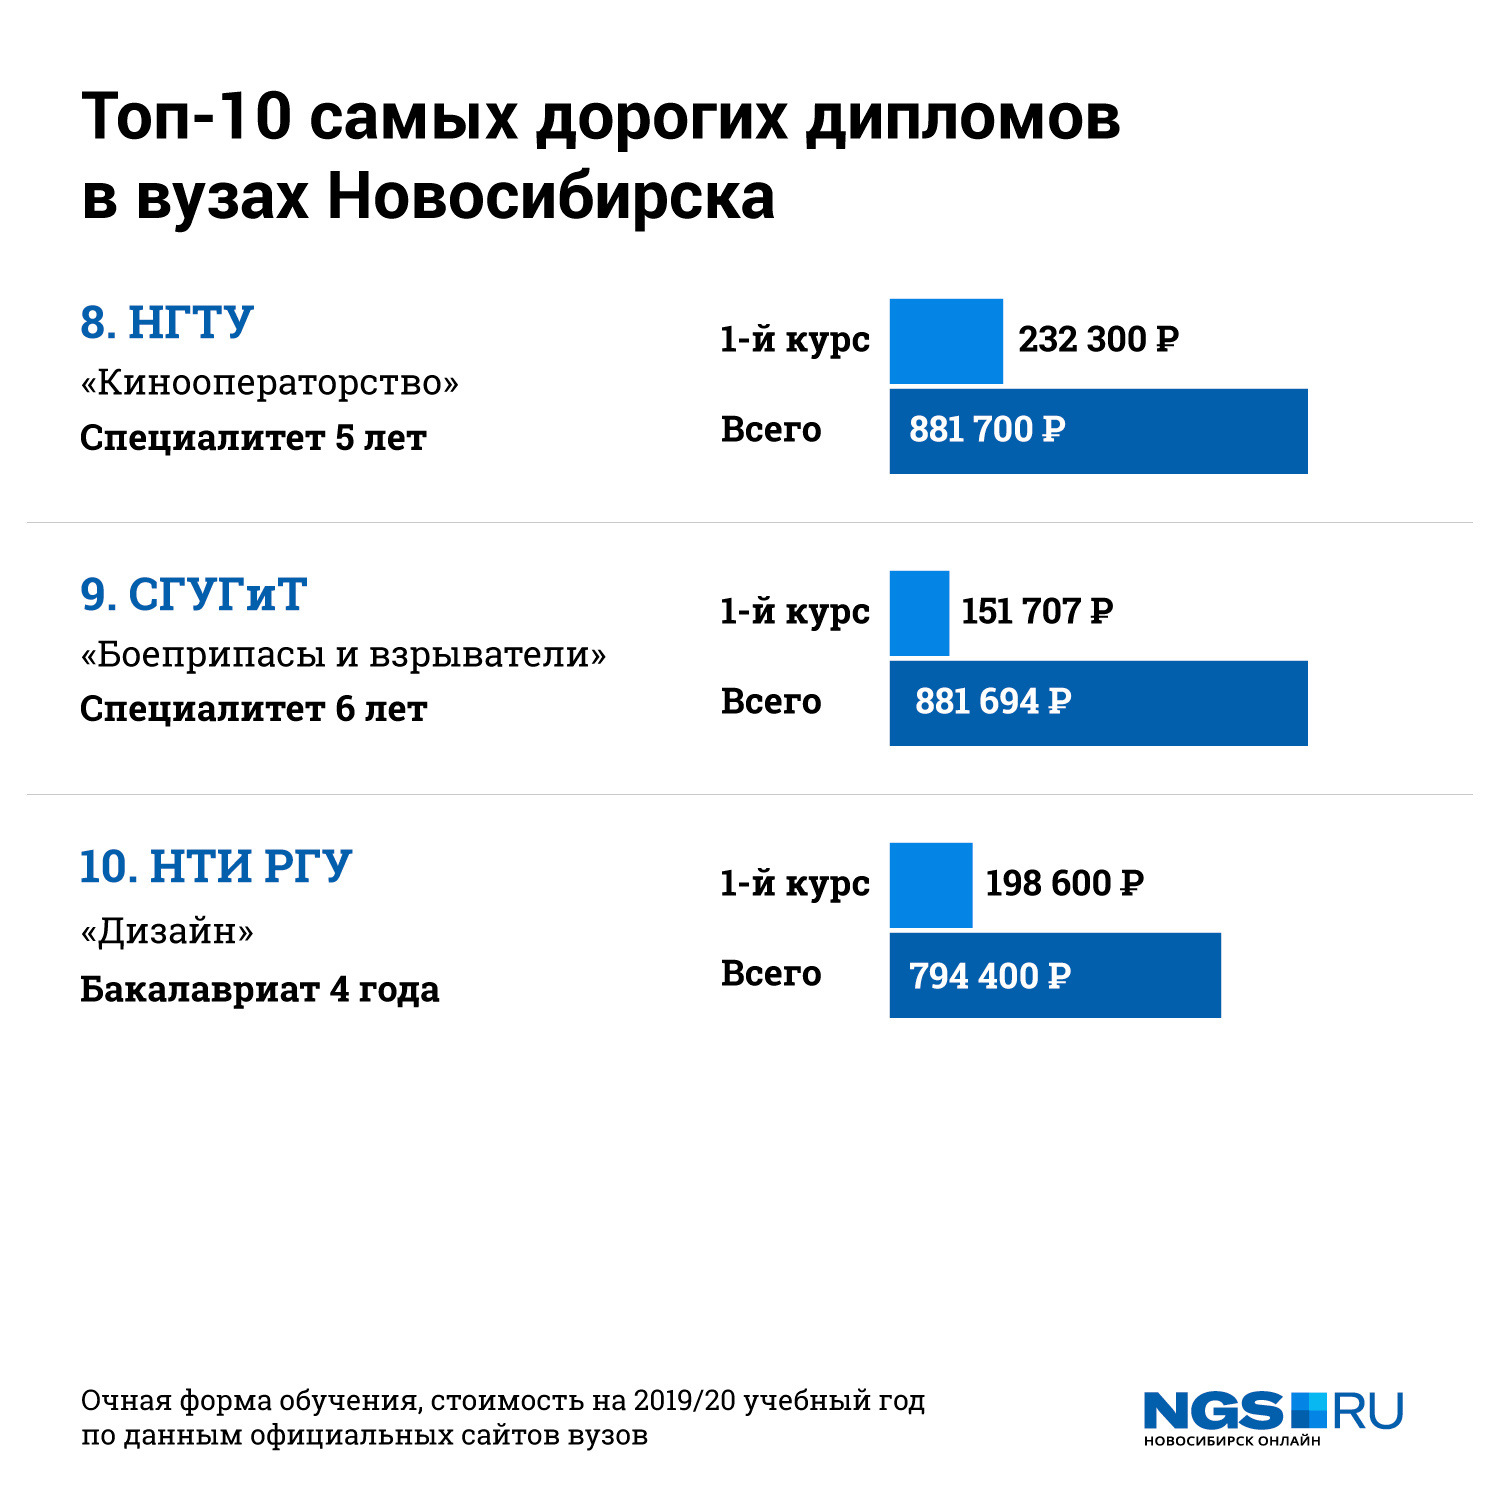 Институты новосибирска после 11 класса. Бюджетные места в вузах 2020. Бюджетные места в вузах 2021. Топ университетов Новосибирска.